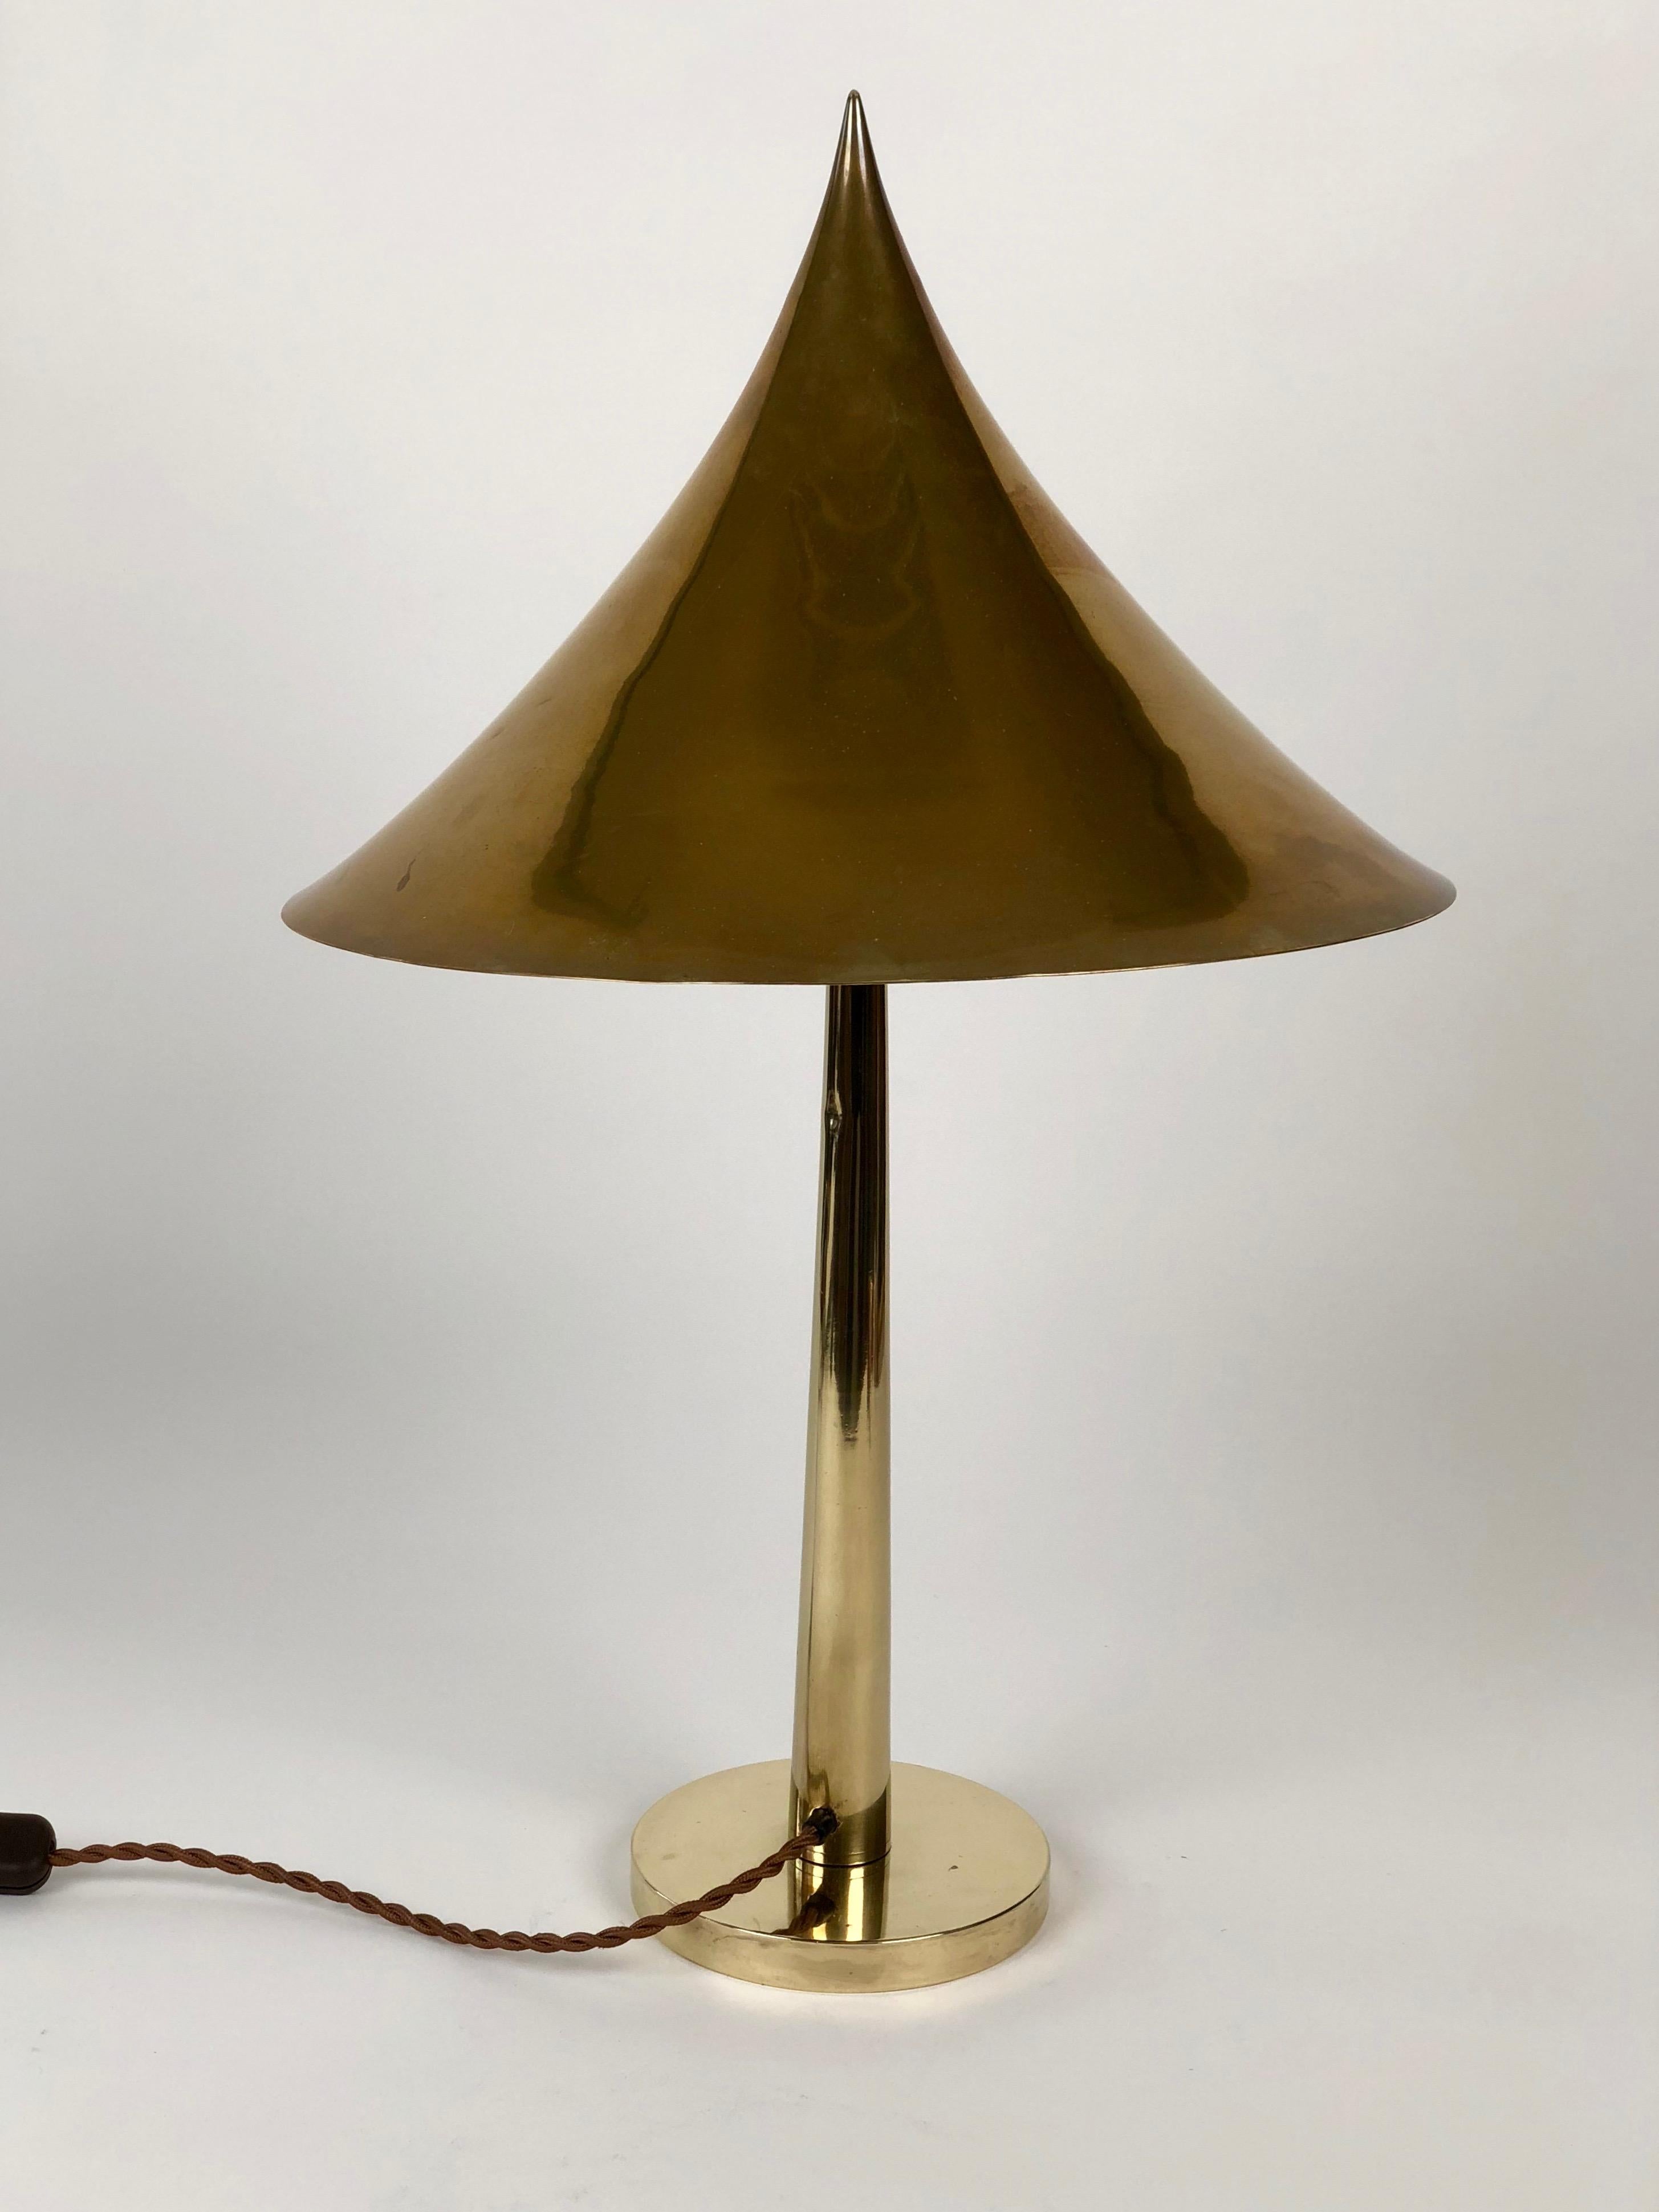 Lampe de table de la société August Melzer, Vienne Autriche, ca 1910/1915. 
L'abat-jour est un cône pointu réalisé en laiton, il est supporté par un tapeur
un arbre qui est fixé à une base cylindrique. Ces trois éléments sont parfaitement